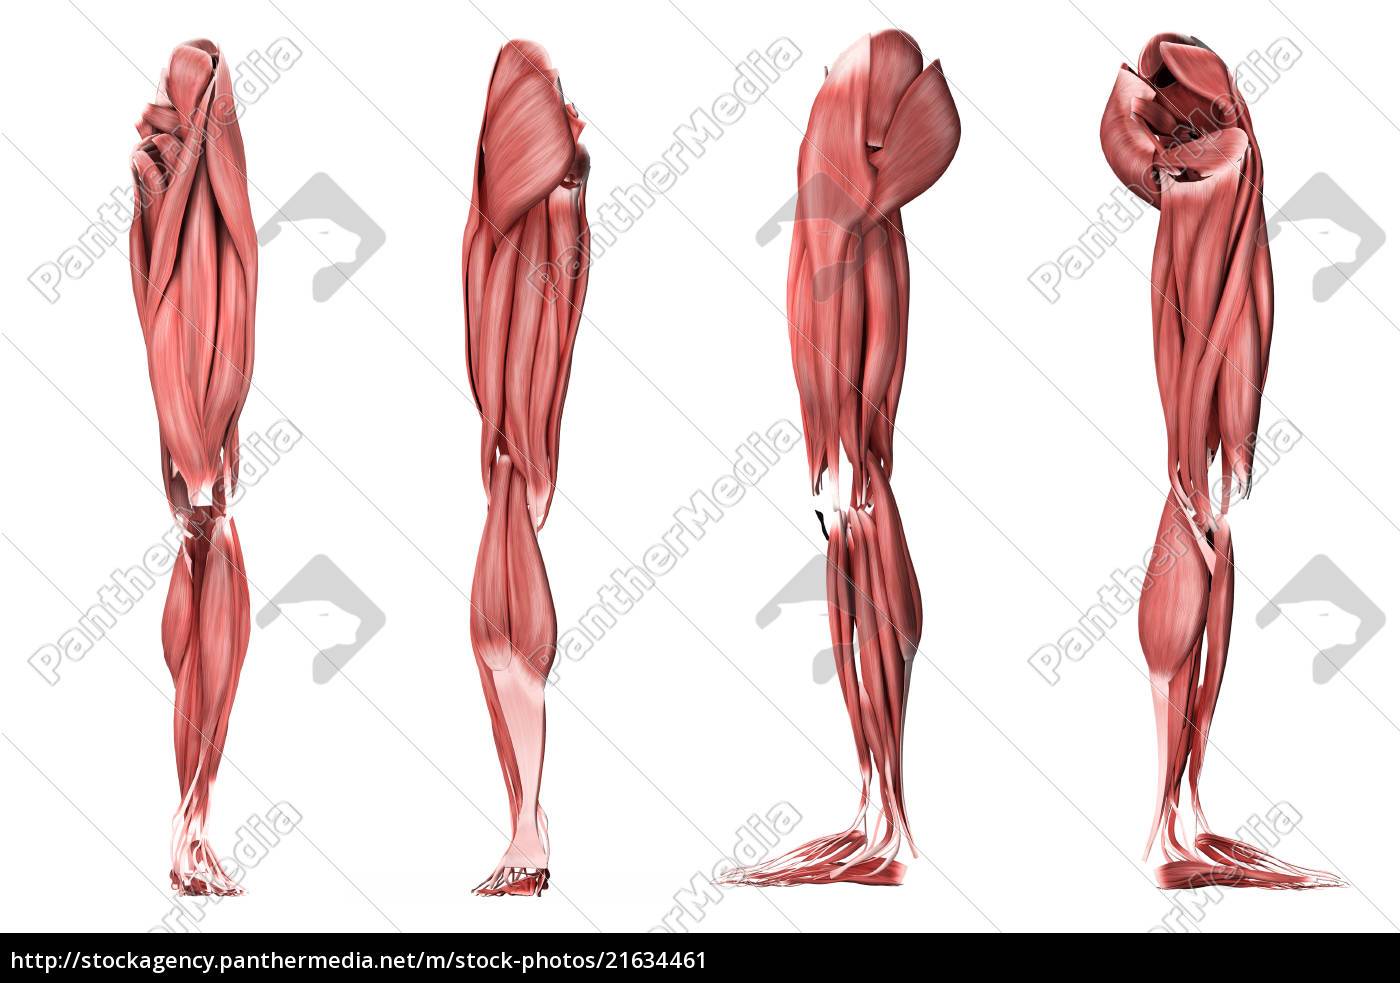 Мышцы нижних конечностей стопы. Мышцы нижней конечности 3д анатомия. Мышцы нижних конечностей анатомия без подписей. Мышцы нижней конечности пластическая анатомия. Мышцы нижней конечности анатомия.